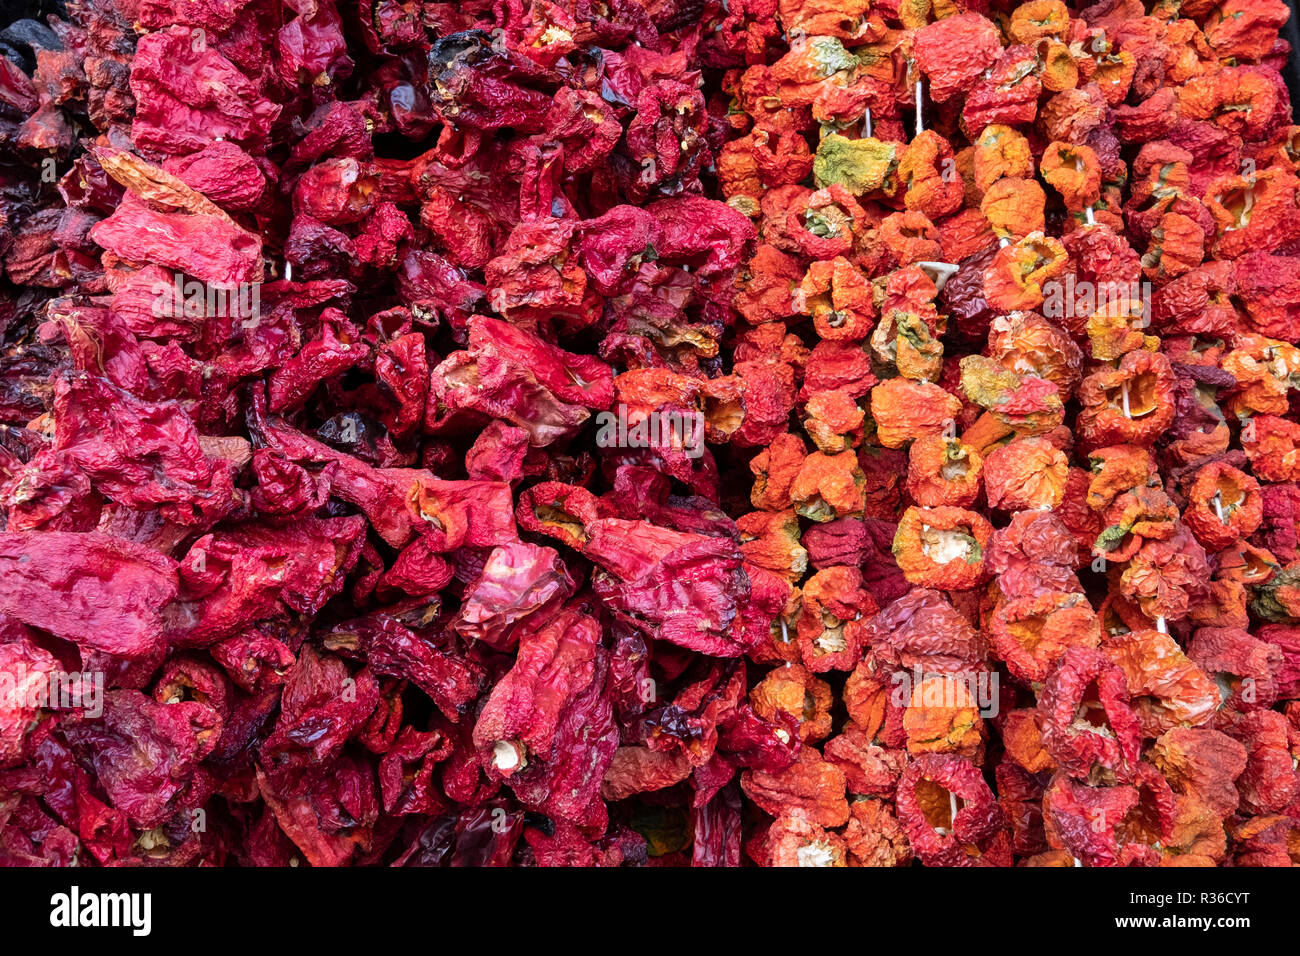 Gemüse, getrocknet Gemüse, in Sanliurfa, Türkei. Stockfoto